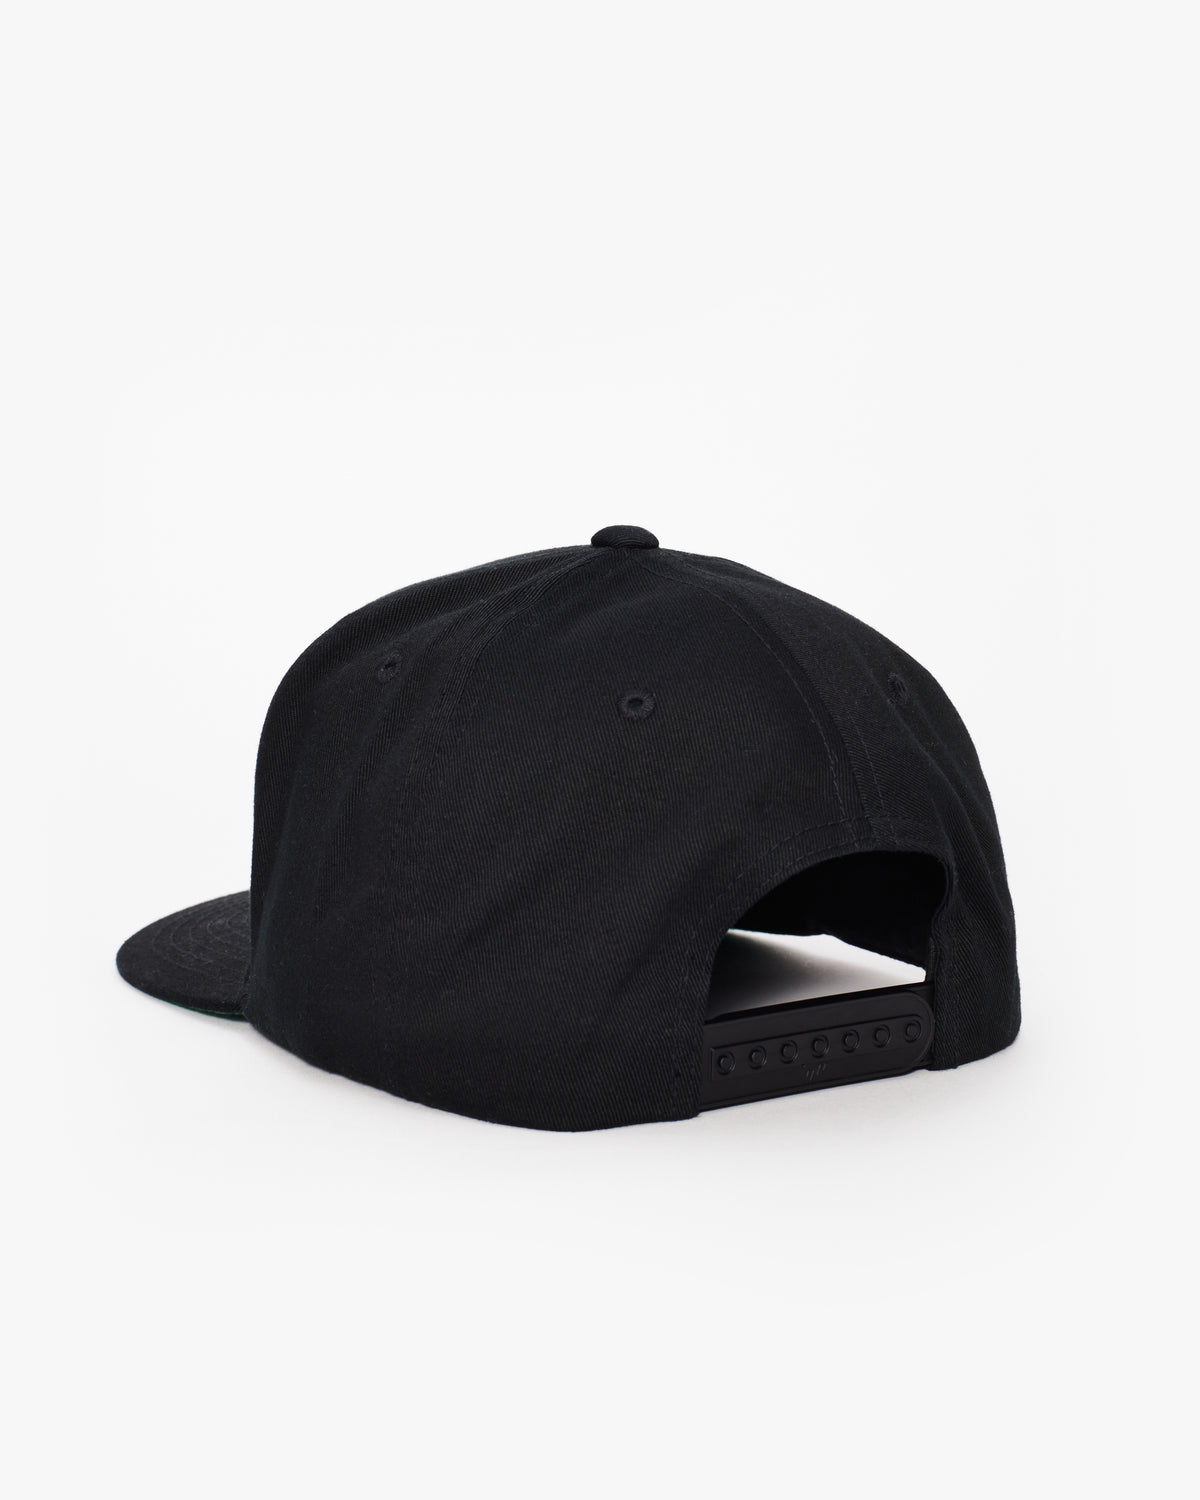 Equinox Snapback Flat Brim Hat – Equinox at The Shop